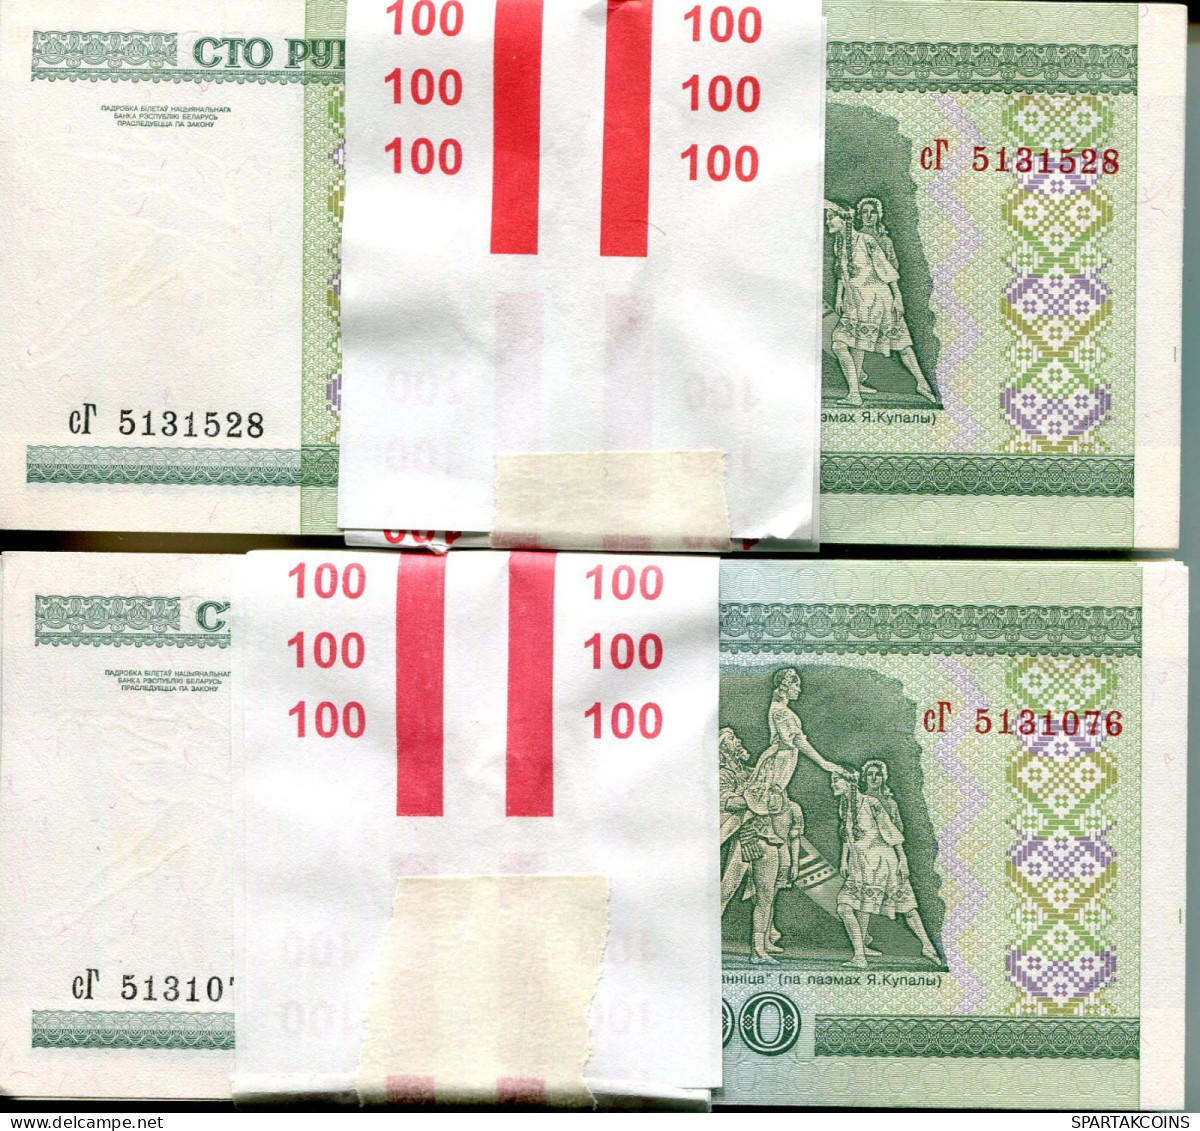 100 RUBLES 2000 UNC BELARUS Papiergeld Banknote #PZ005.V - [11] Lokale Uitgaven